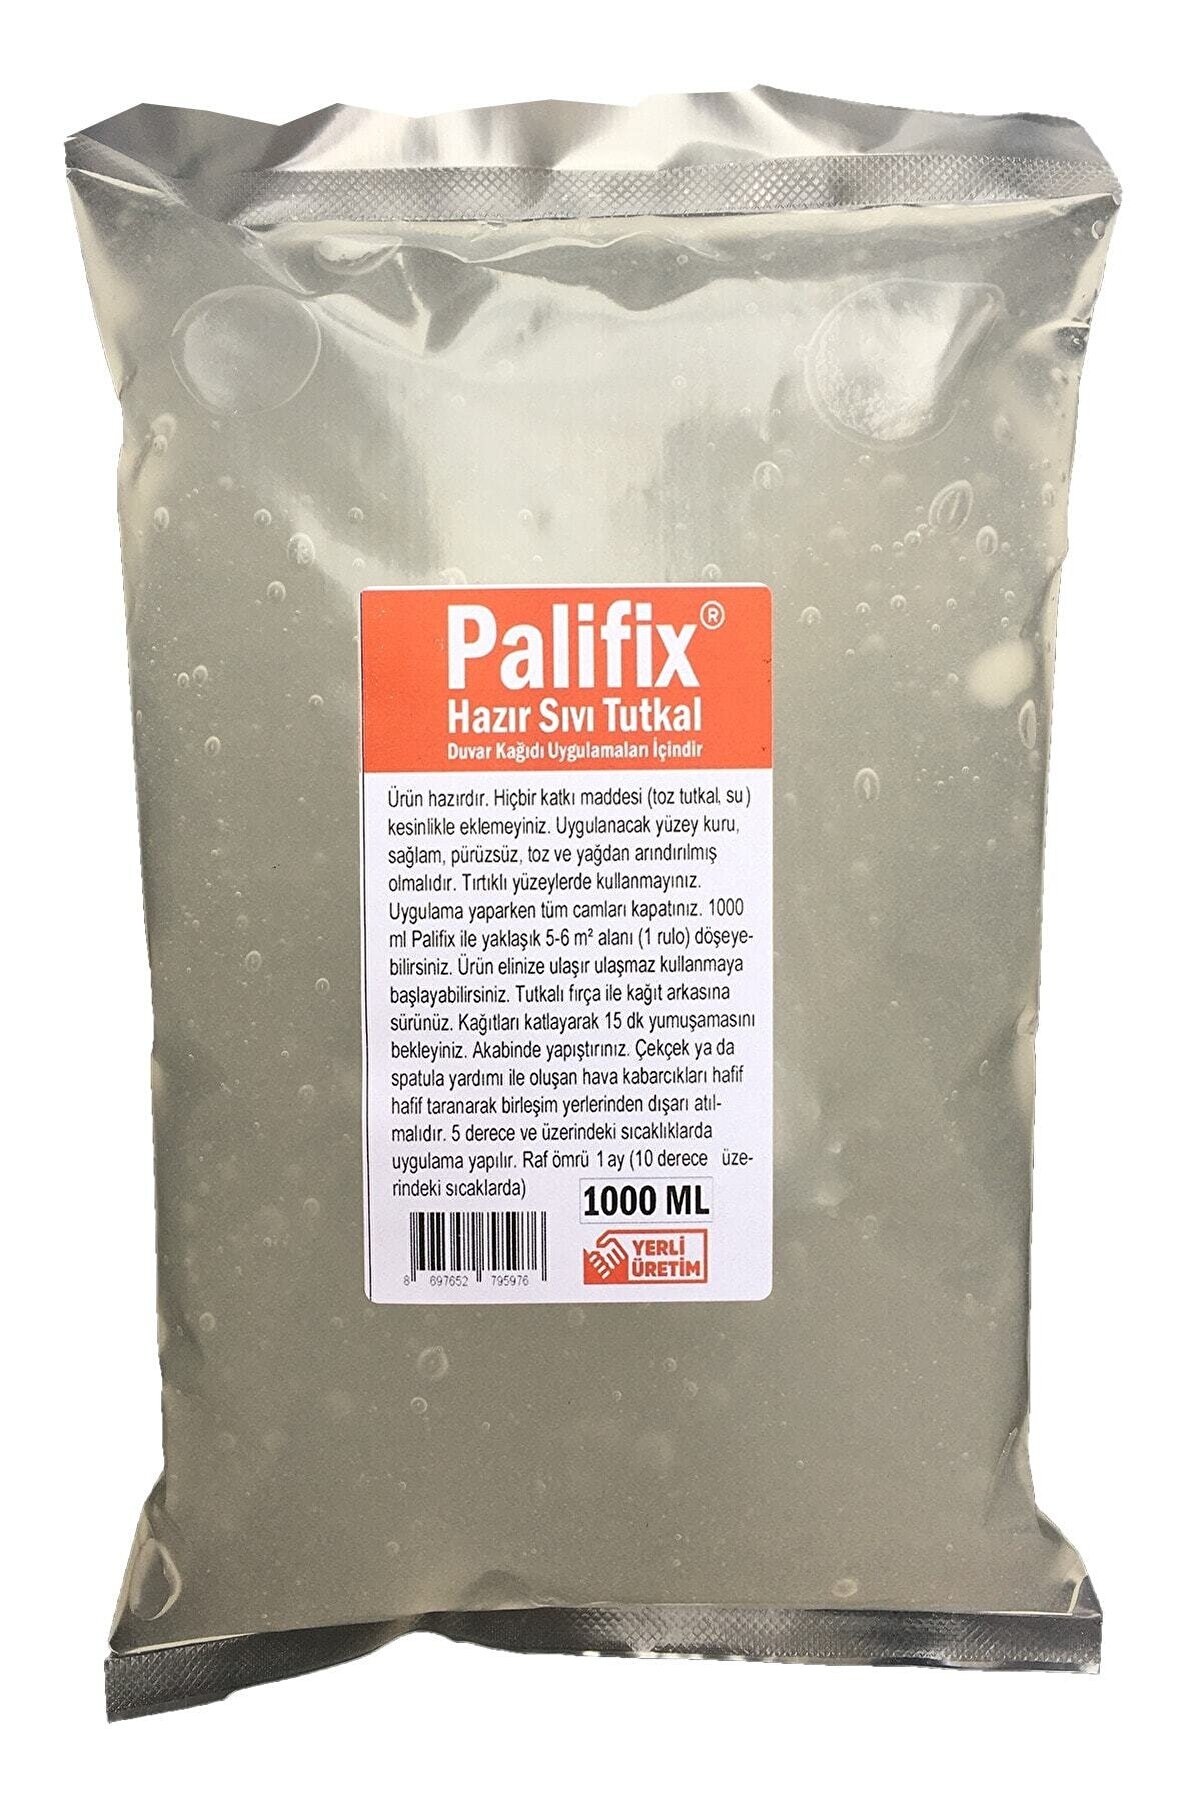 Palifix 1000ml Hazır Sıvı Duvar Kağıdı Tutkalı Yapıştırıcısı Sıvı Tutkal Glitolin (1 Rulo 5m²-6m² )